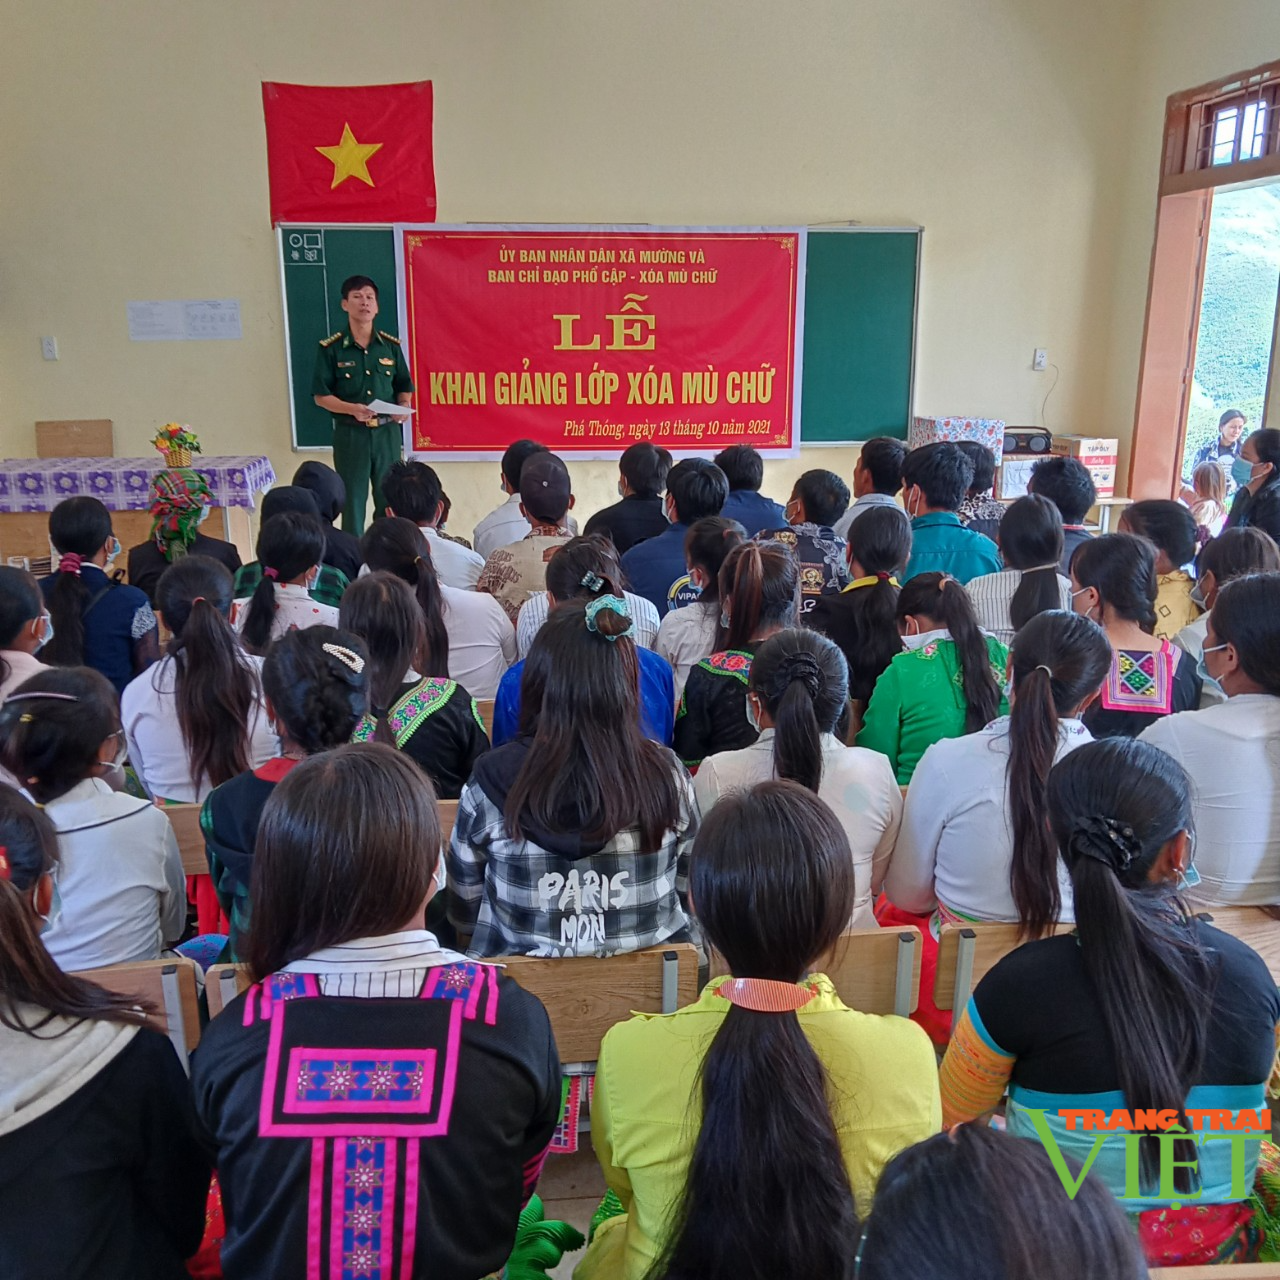 Nông thôn Tây Bắc: Khai giảng lớp học xóa mù chữ cho 61 học viên vùng biên Sơn La - Ảnh 1.